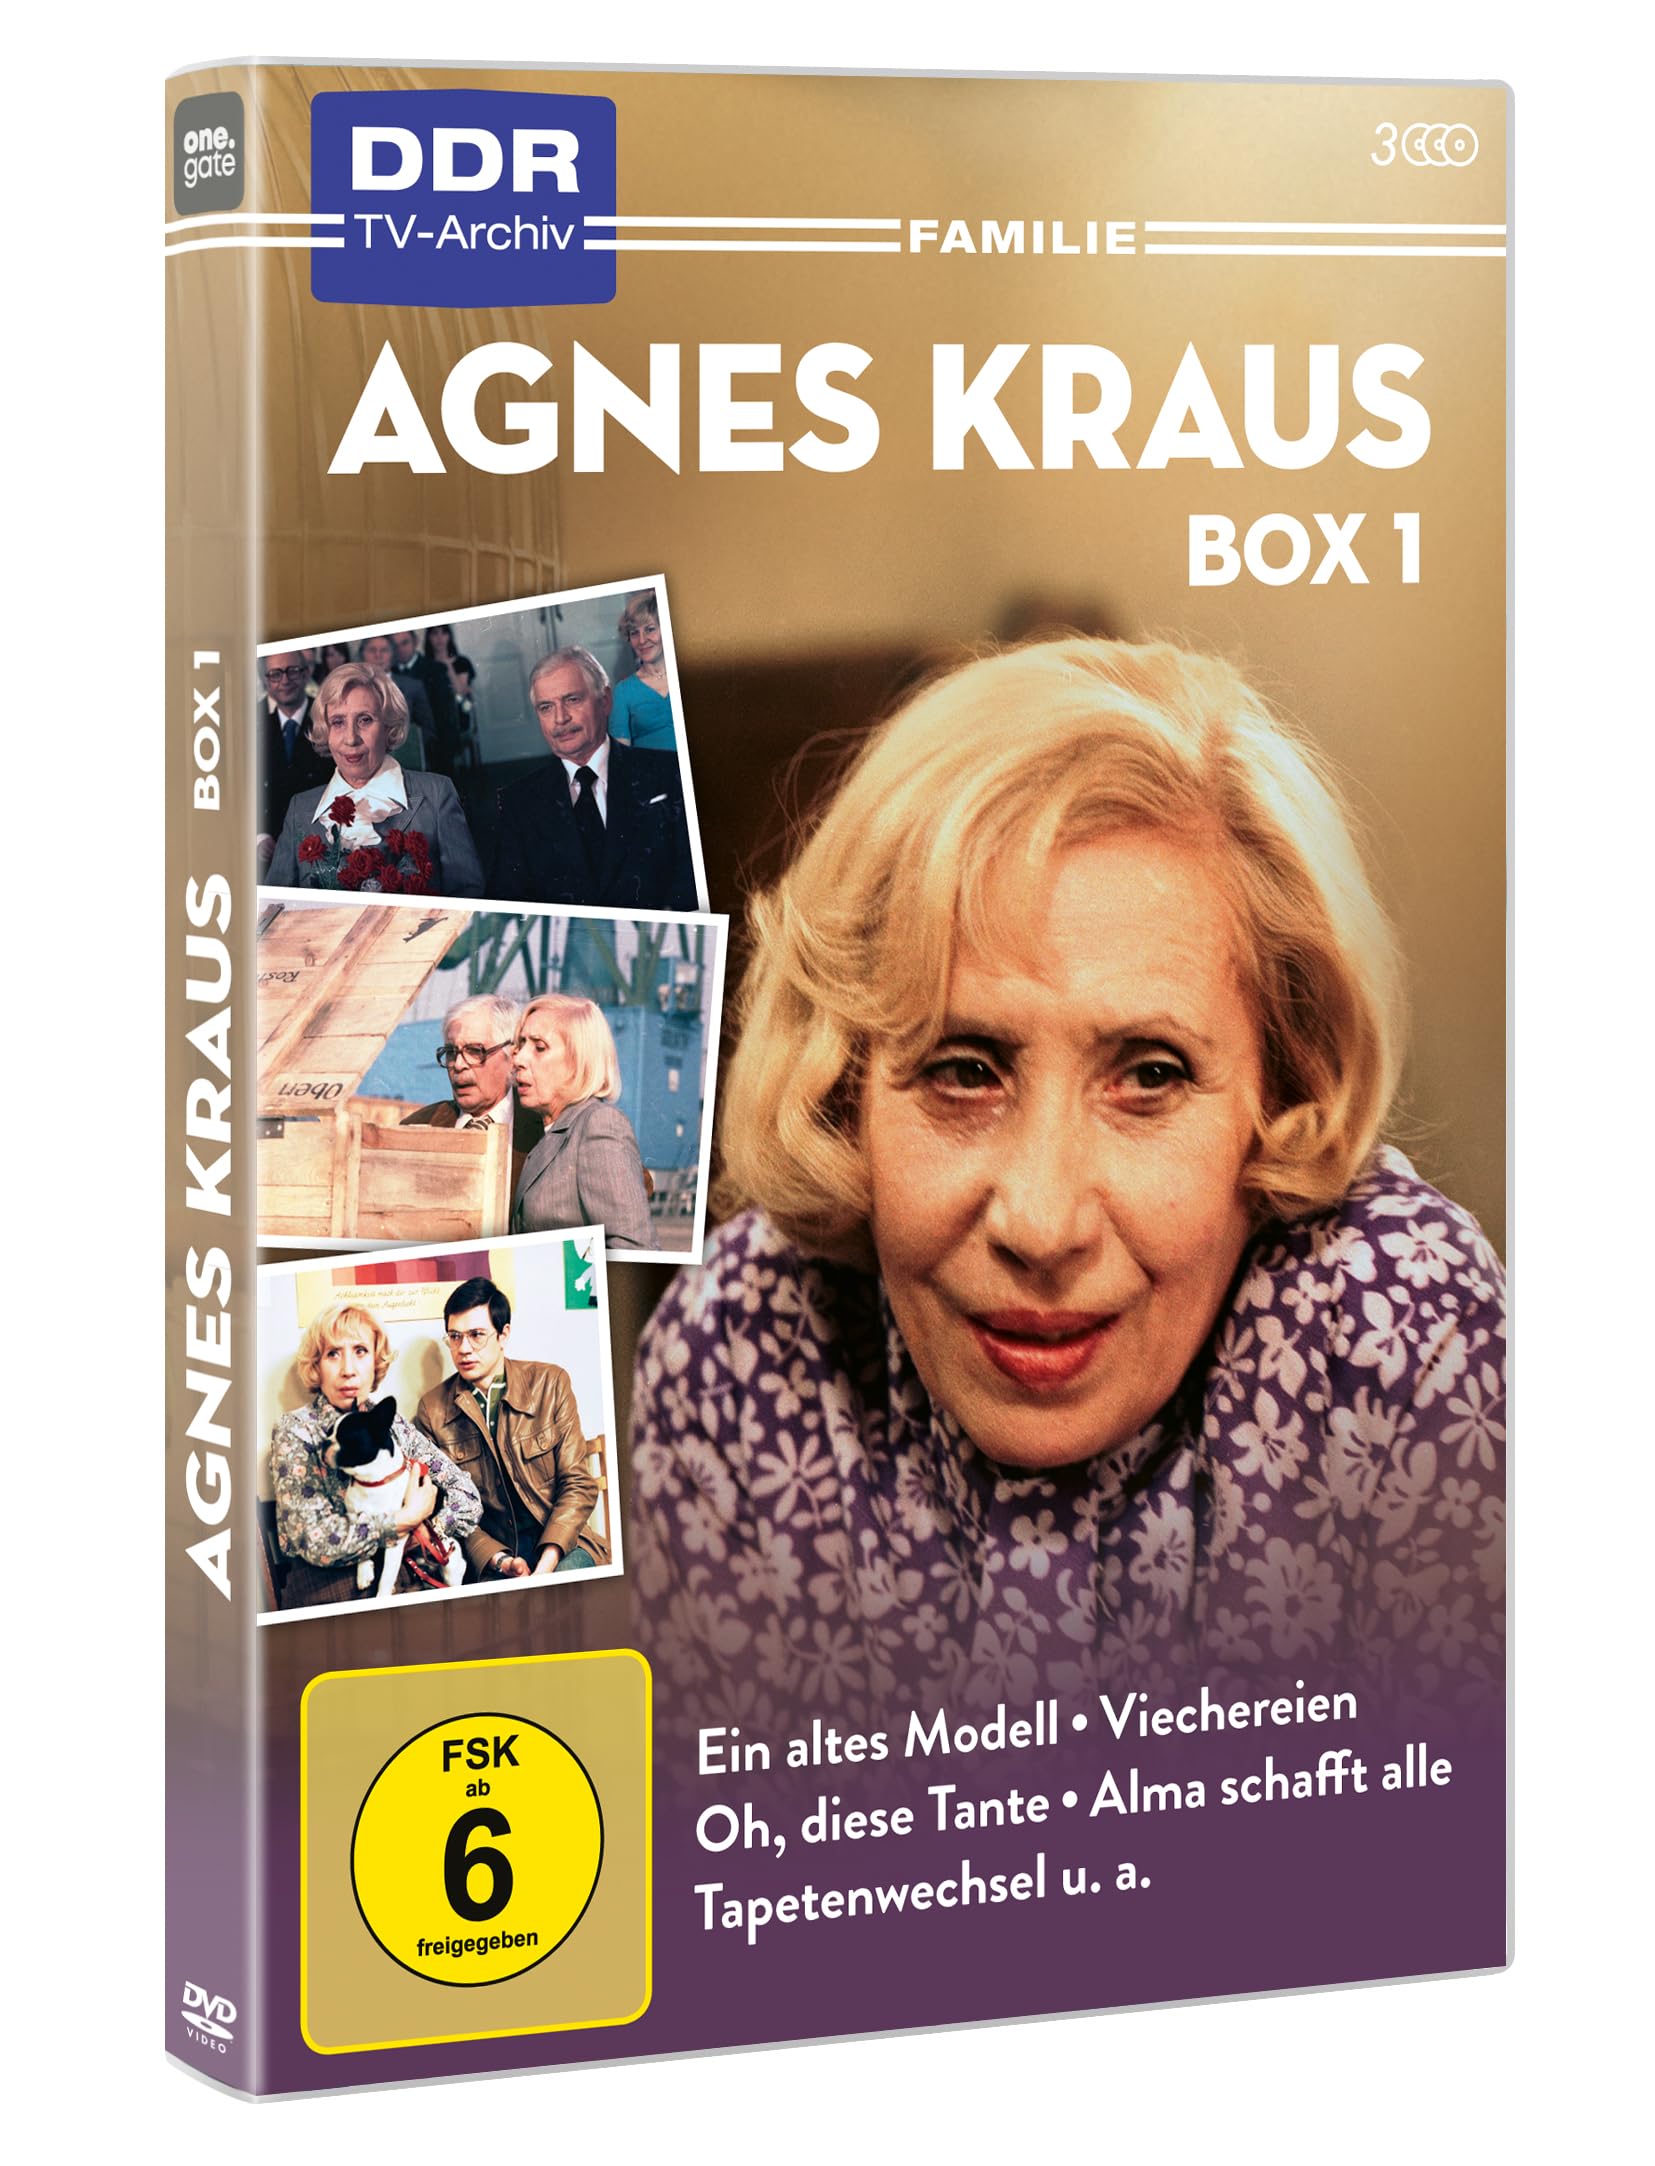 Agnes Kraus - Box 1 (Ein altes Modell, Viechereien, Oh, diese Tante, Alma schafft alle, Tapetenwechsel, Porträt per Telefon, Schauspielereien) (DDR TV-Archiv) [3 DVDs]